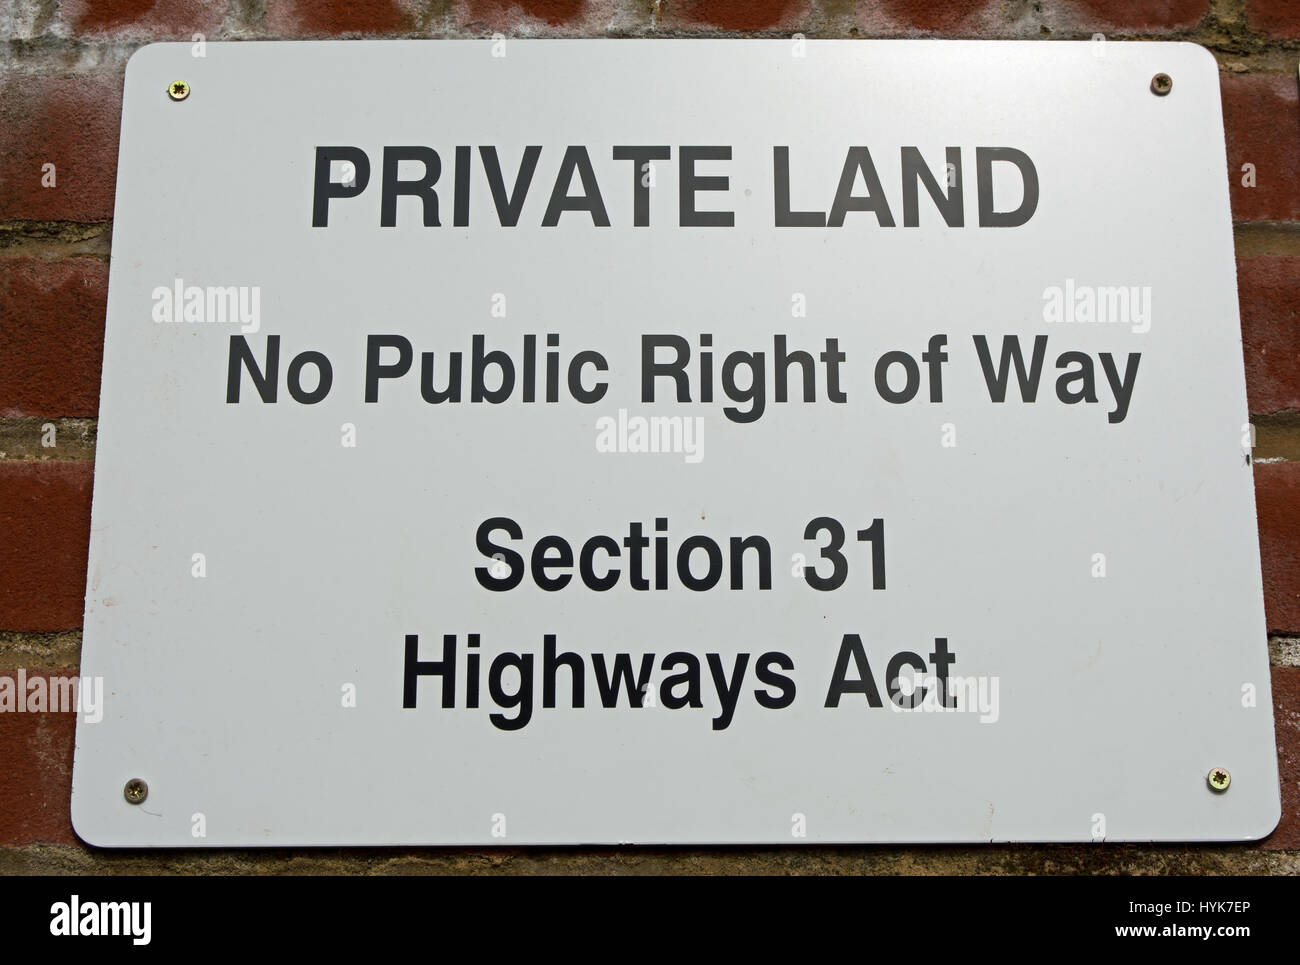 Señal que indica las tierras privadas, ningún derecho de vía pública, Sección 31 de la ley de autopistas, en Twickenham, Middlesex, Inglaterra Foto de stock